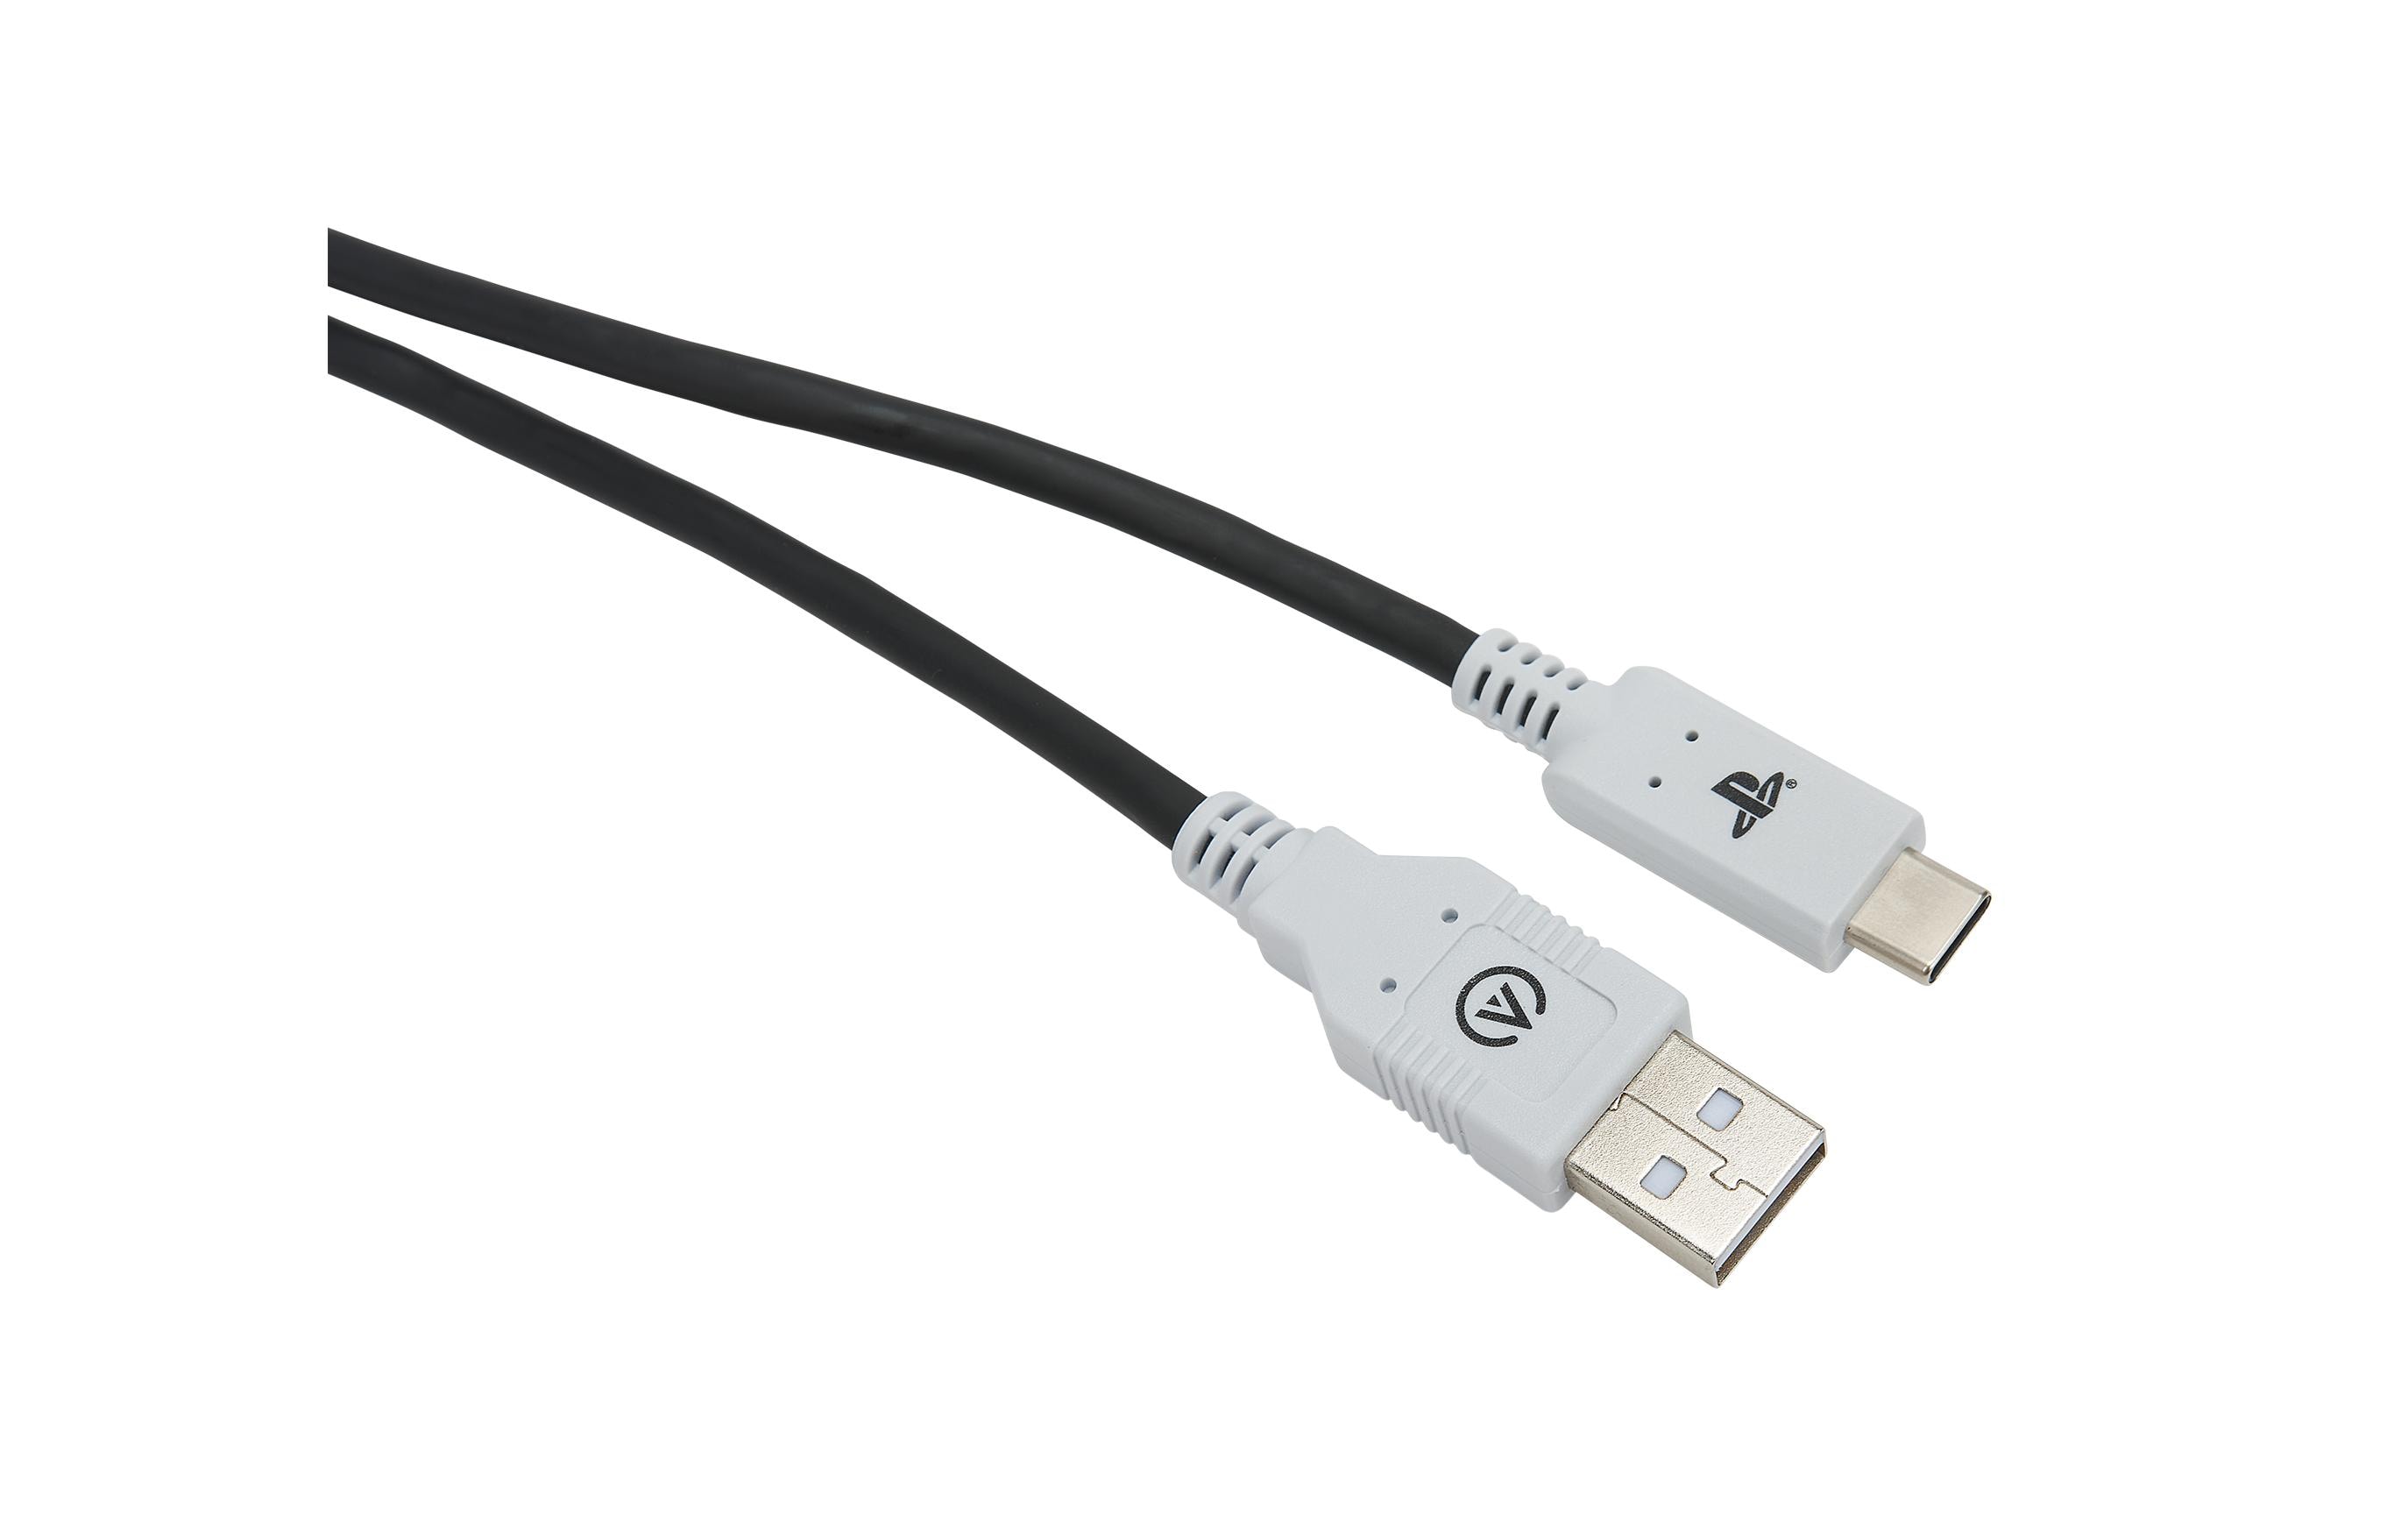 Power A USB-C-Kabel für PlayStation 5